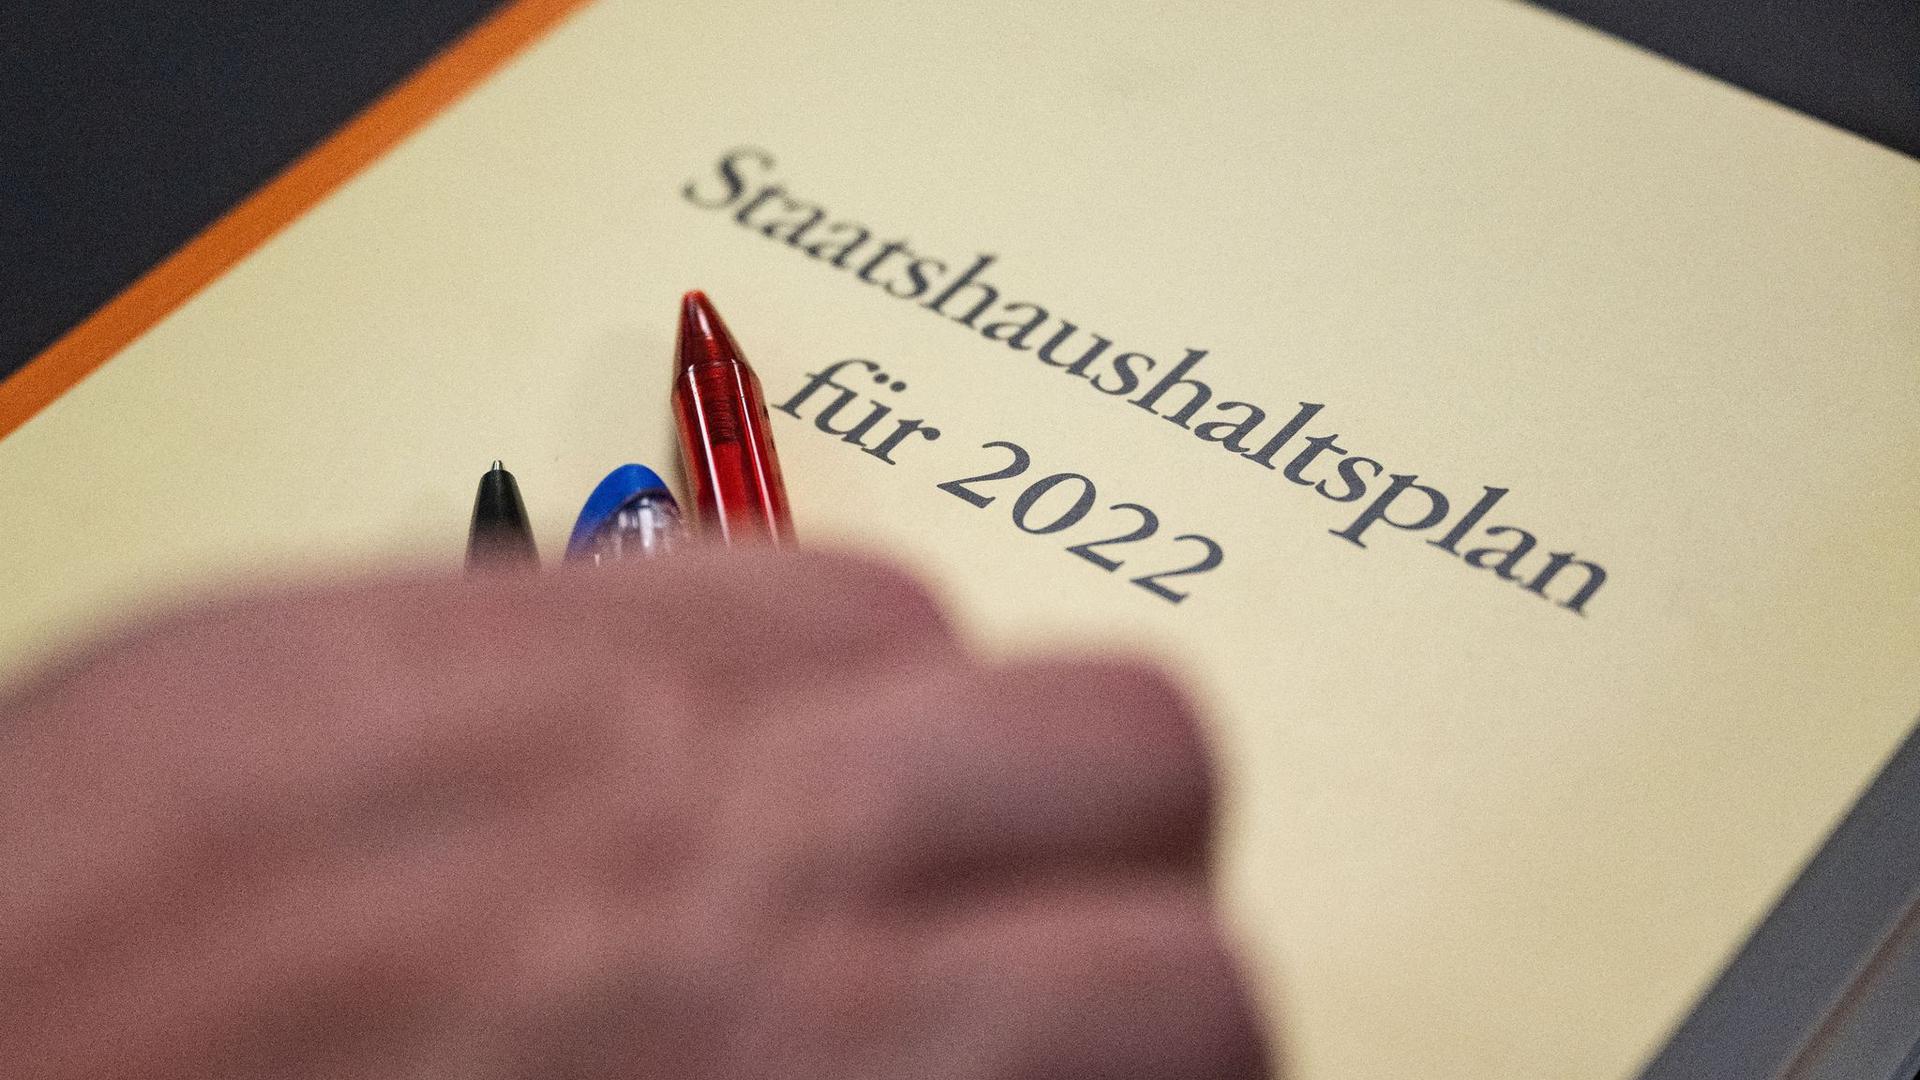 Der Staatshaushaltsplan des Landes Baden-Württemberg für das Jahr 2022 – bei der Mitfinanzierung des Entlastungspakets der Bundesregierung haben die Länder noch Verhandlungsbedarf.